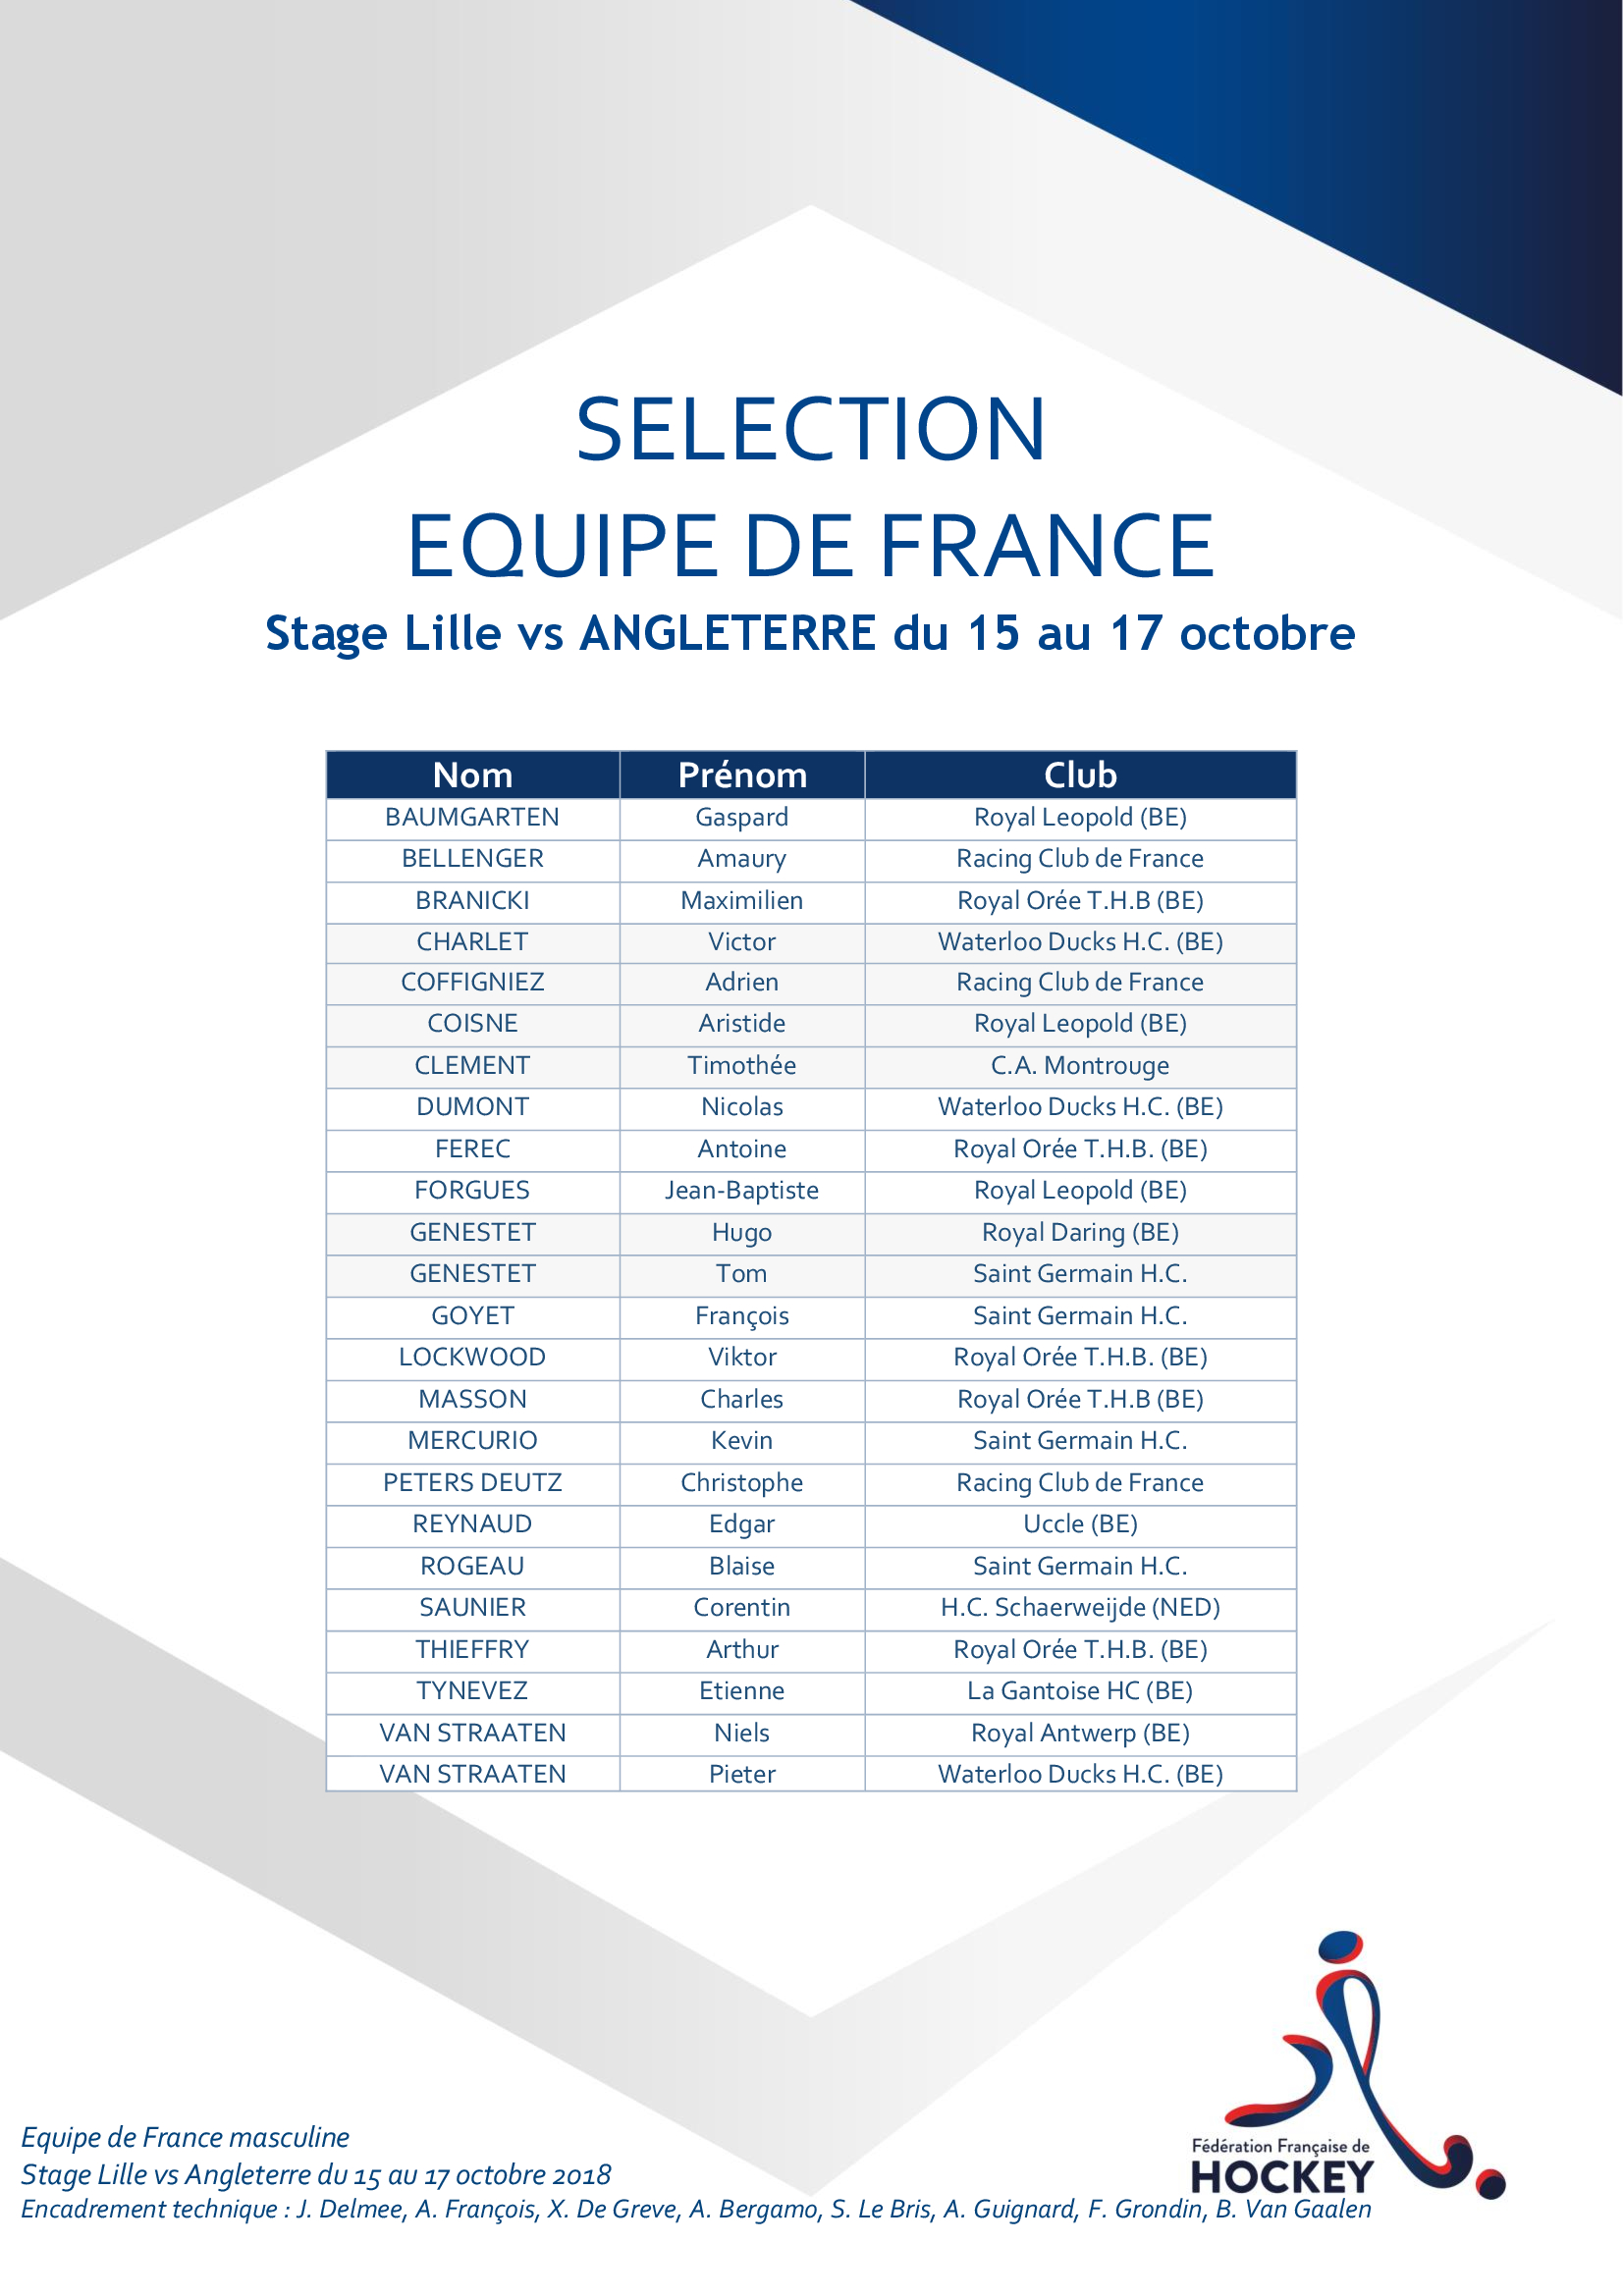 SELECTION EQUIPE DE FRANCE Matchs 15 au 17 octobre 2018 vs ENG